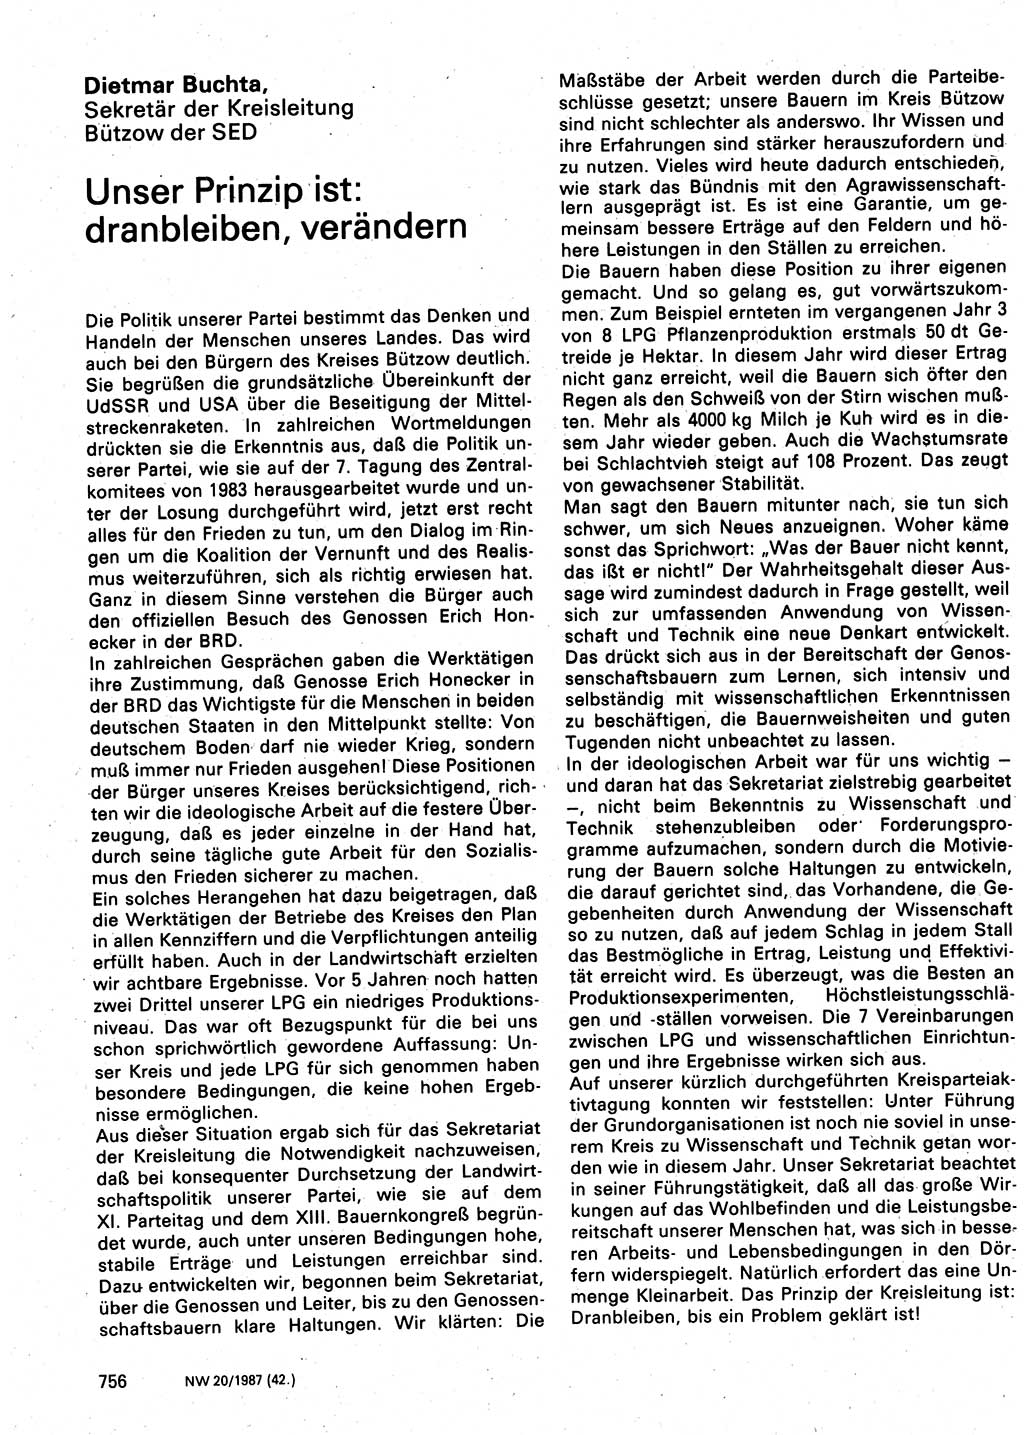 Neuer Weg (NW), Organ des Zentralkomitees (ZK) der SED (Sozialistische Einheitspartei Deutschlands) für Fragen des Parteilebens, 42. Jahrgang [Deutsche Demokratische Republik (DDR)] 1987, Seite 756 (NW ZK SED DDR 1987, S. 756)